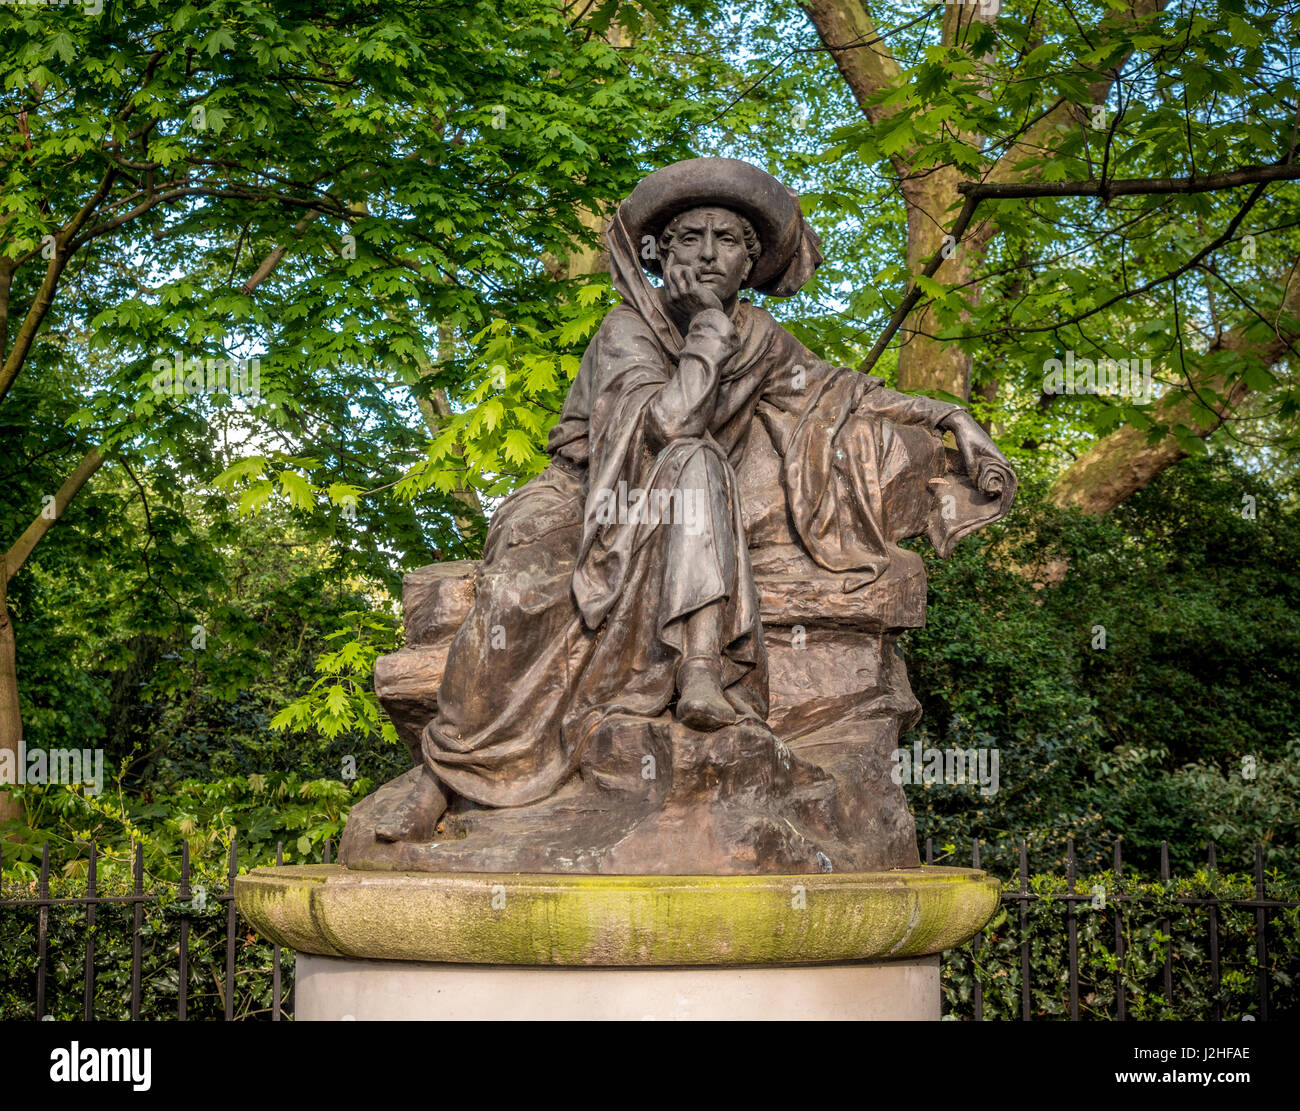 Statua del Principe Enrico il navigatore in Belgrave Square, Londra. Da scultore portoghese Jose Simoes de Almeida. Foto Stock